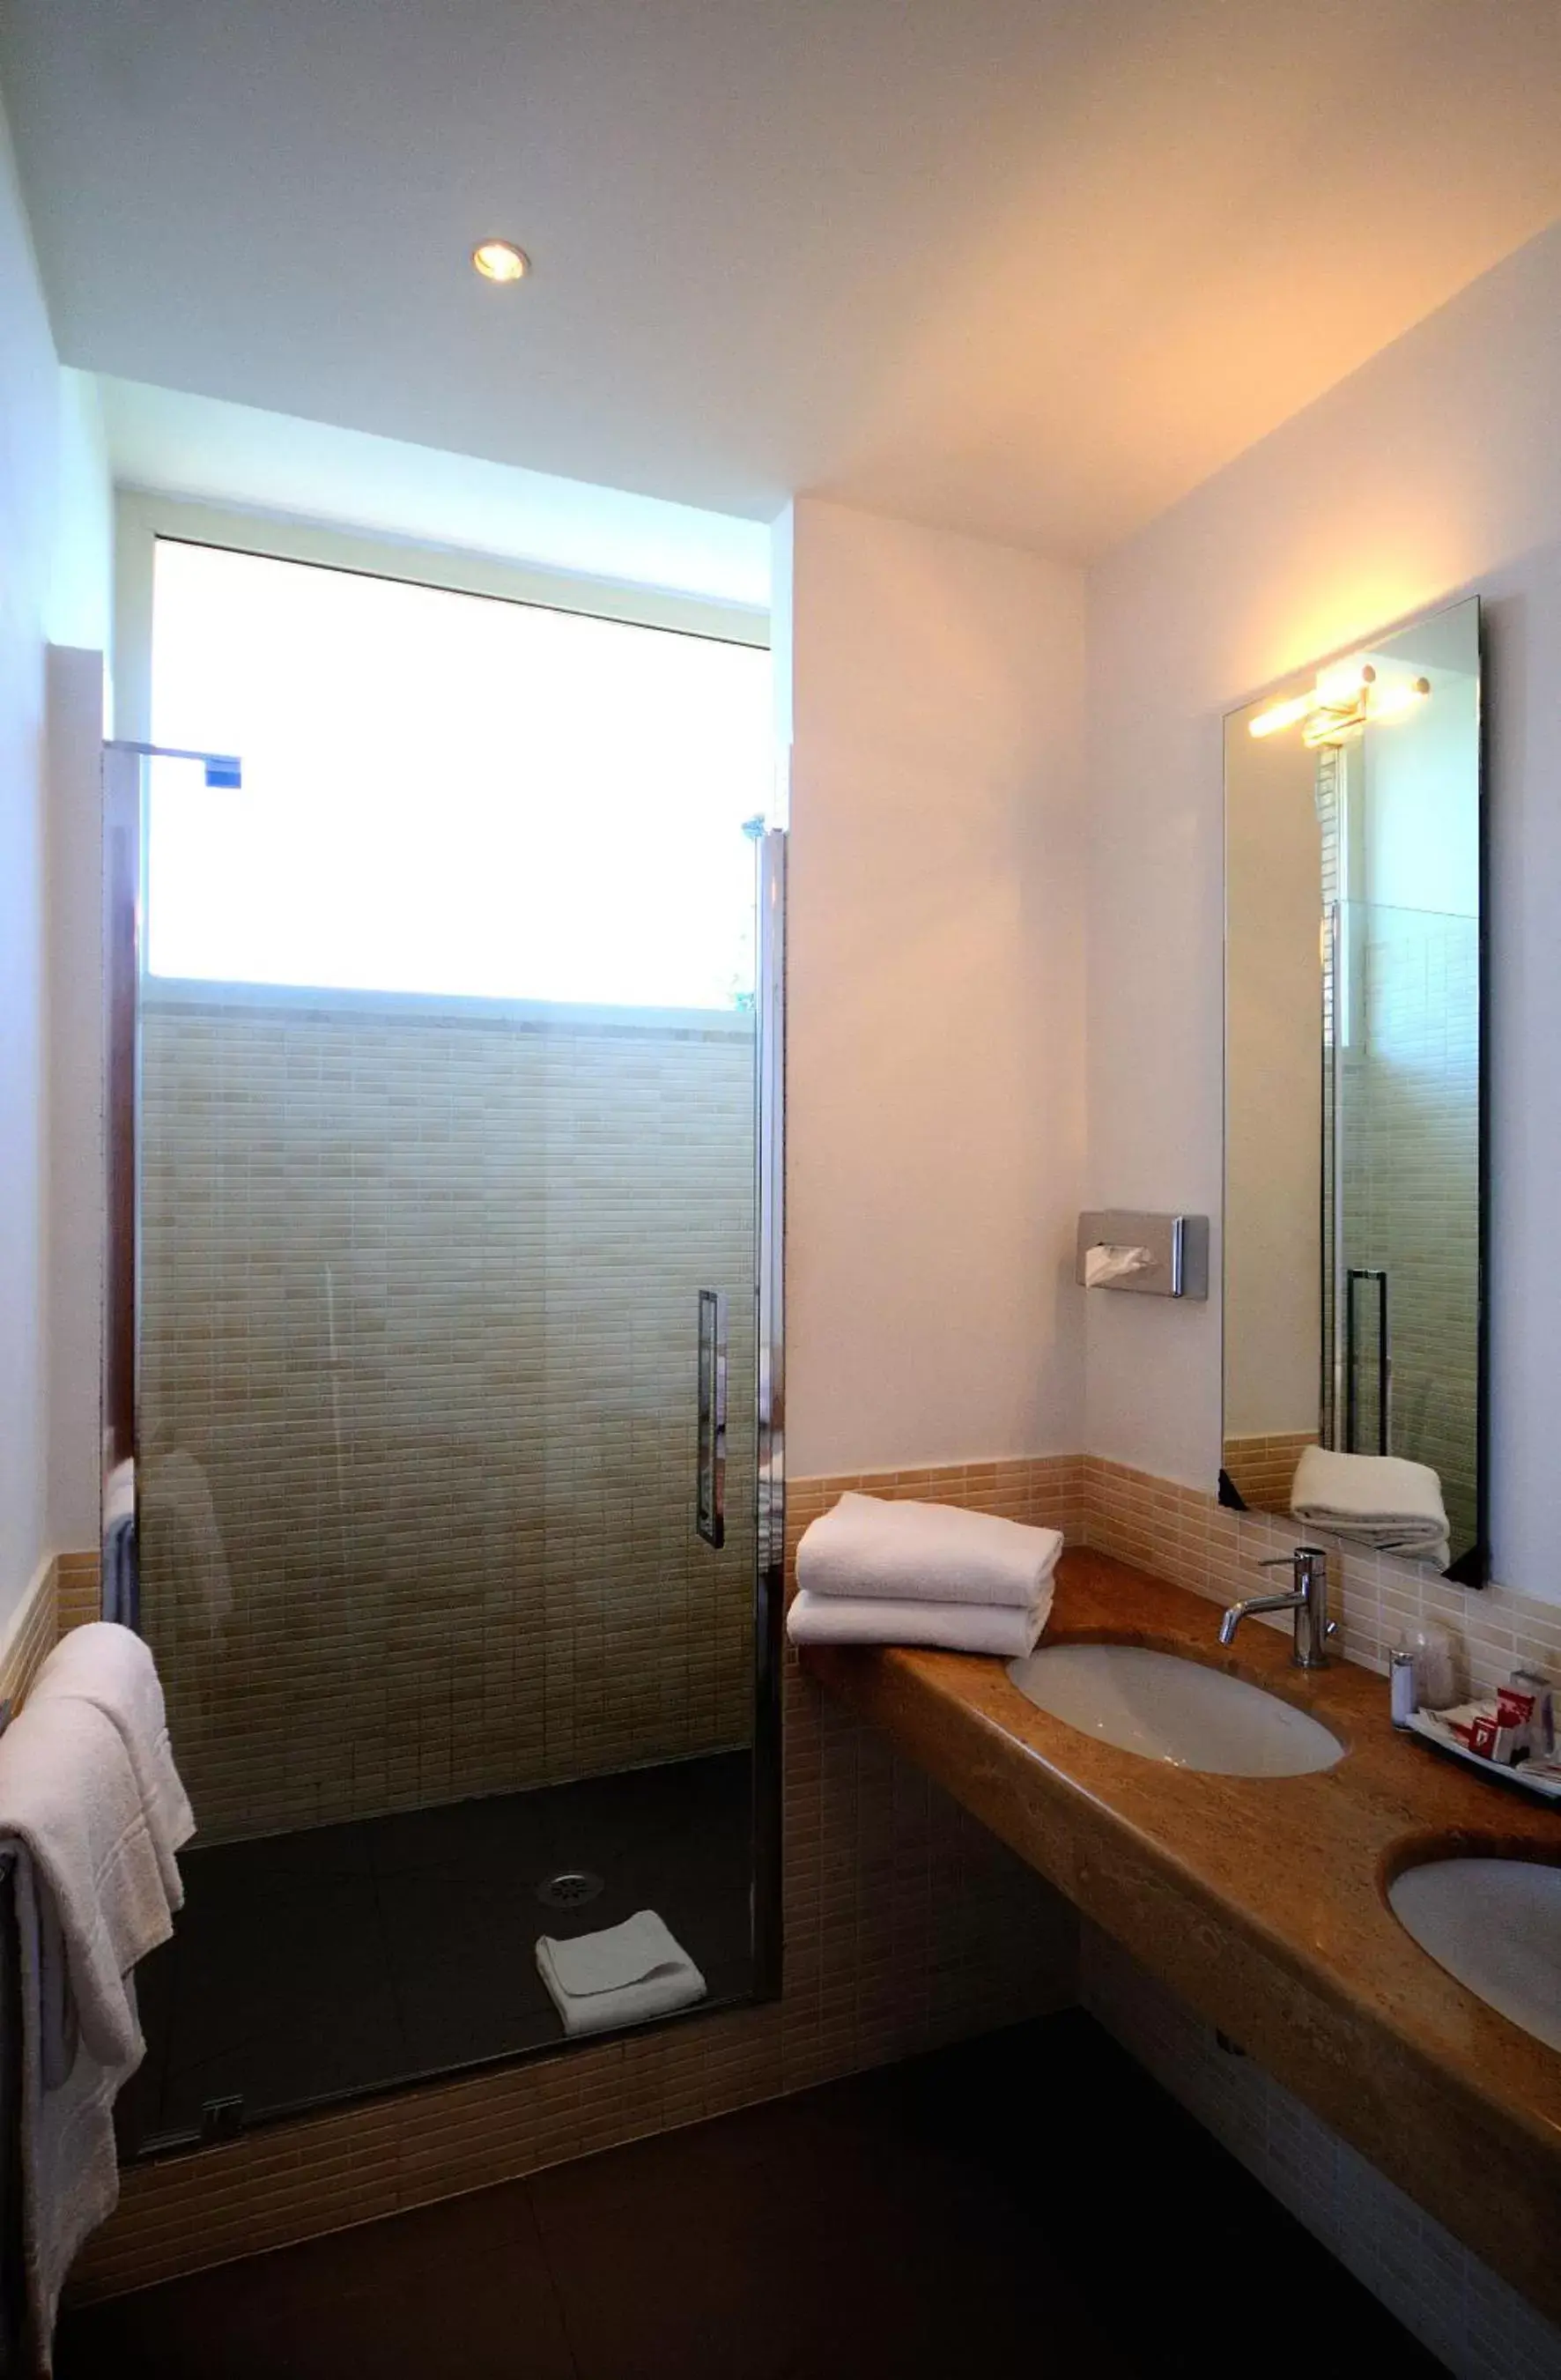 Shower, Bathroom in Best Western Hotel Globus